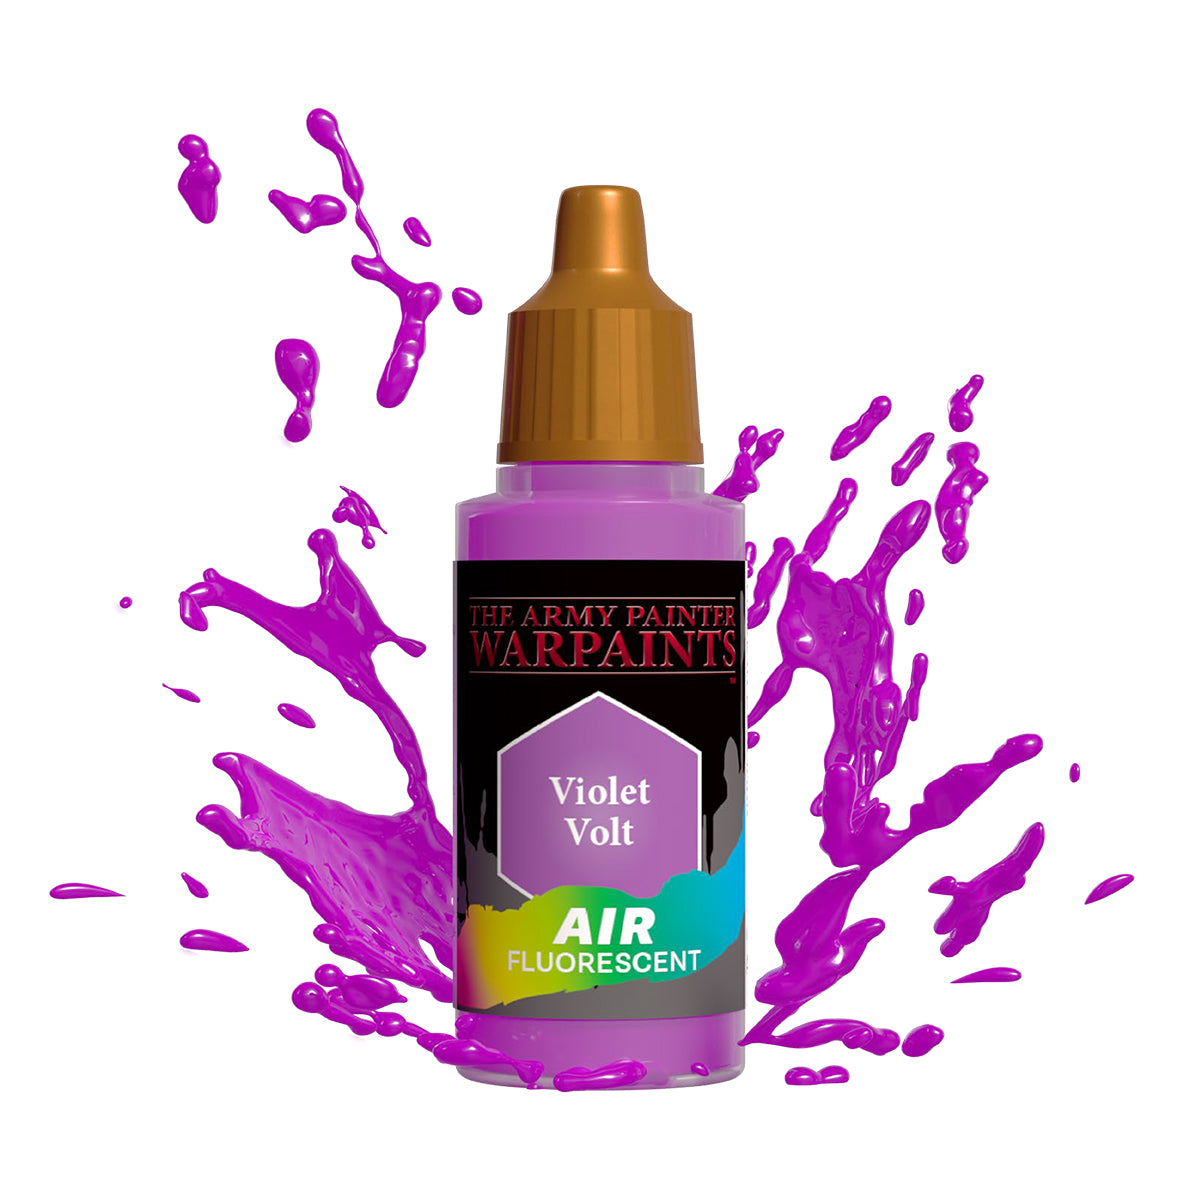 Warpaints Air Fluorescent: Violet Volt